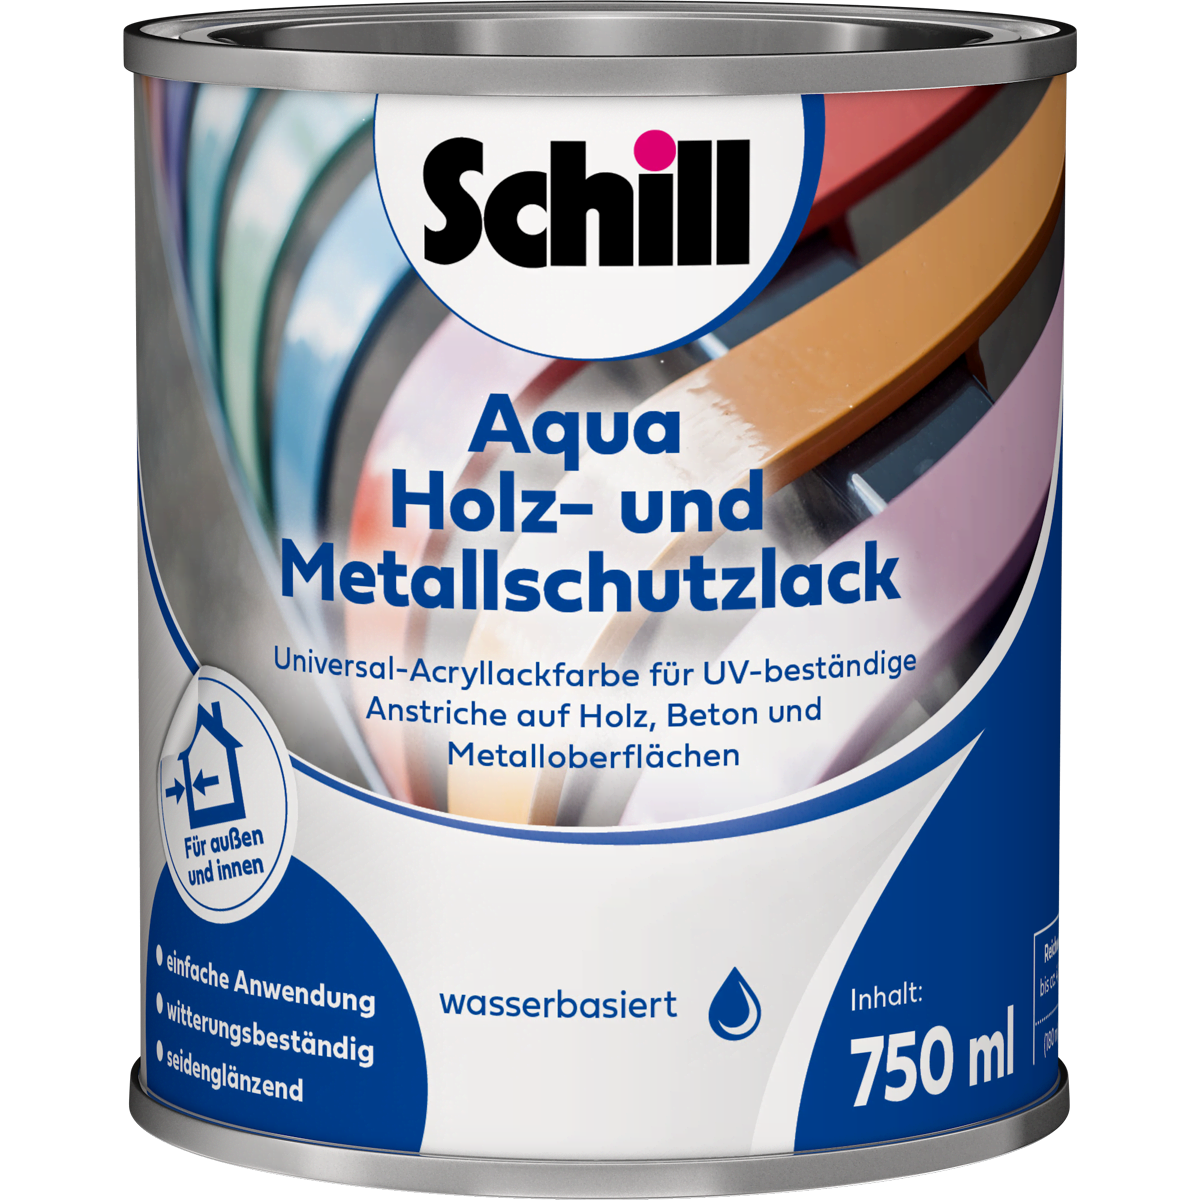 Schill Aqua Holz- und Metallschutzlack von Schill